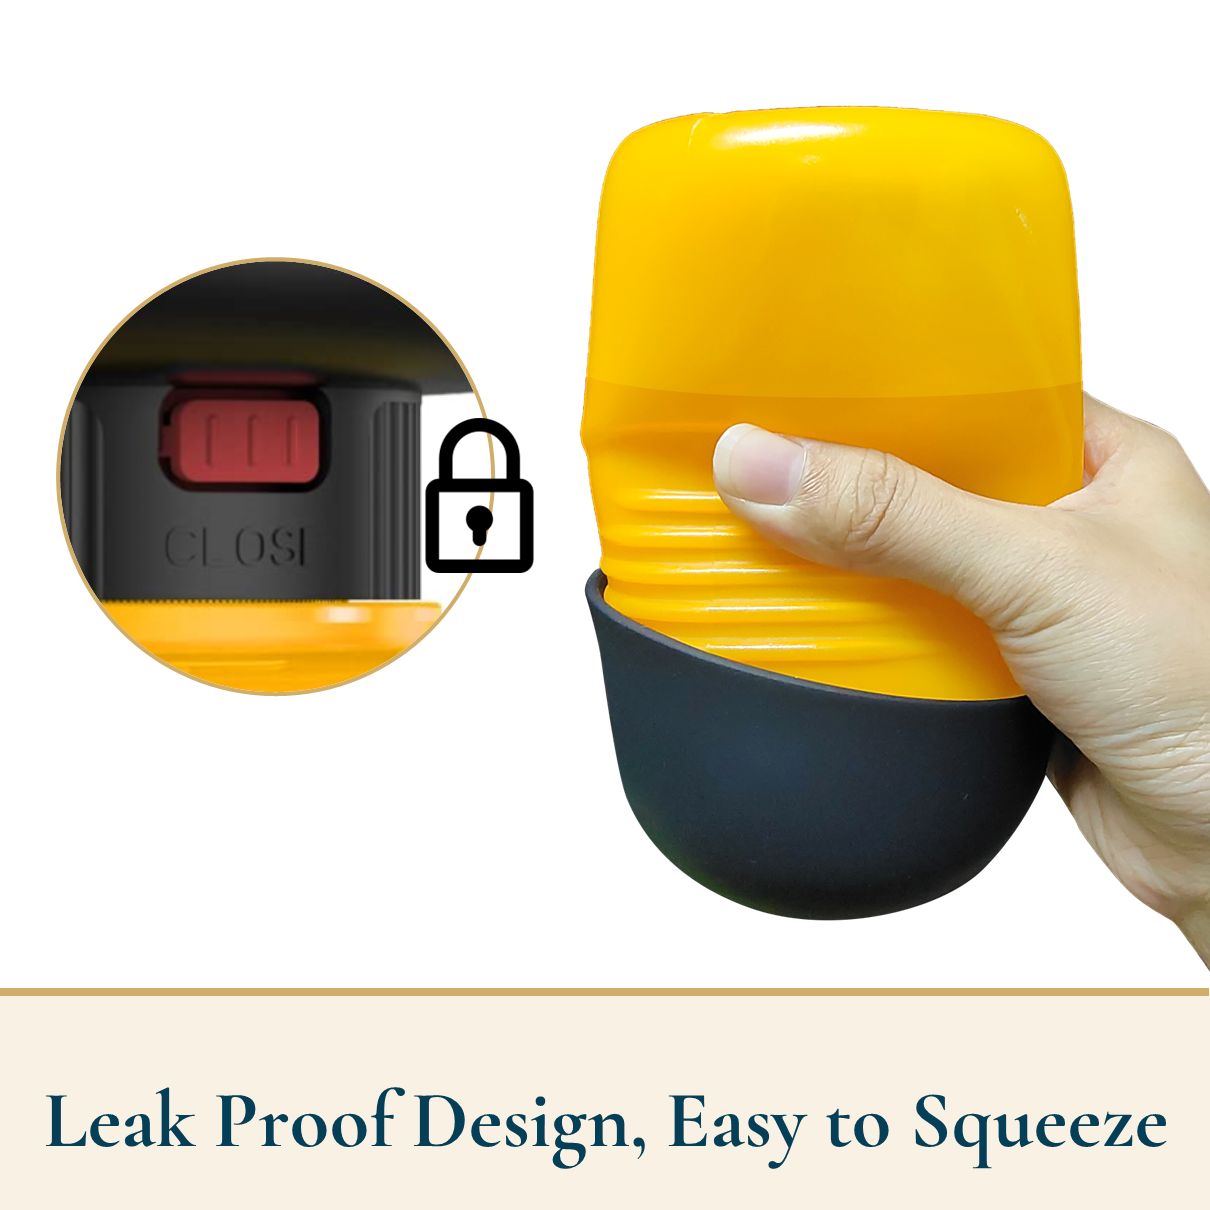 Leakproof Dog Water Bottle With Bonus Dog Poop Bag Dispenser